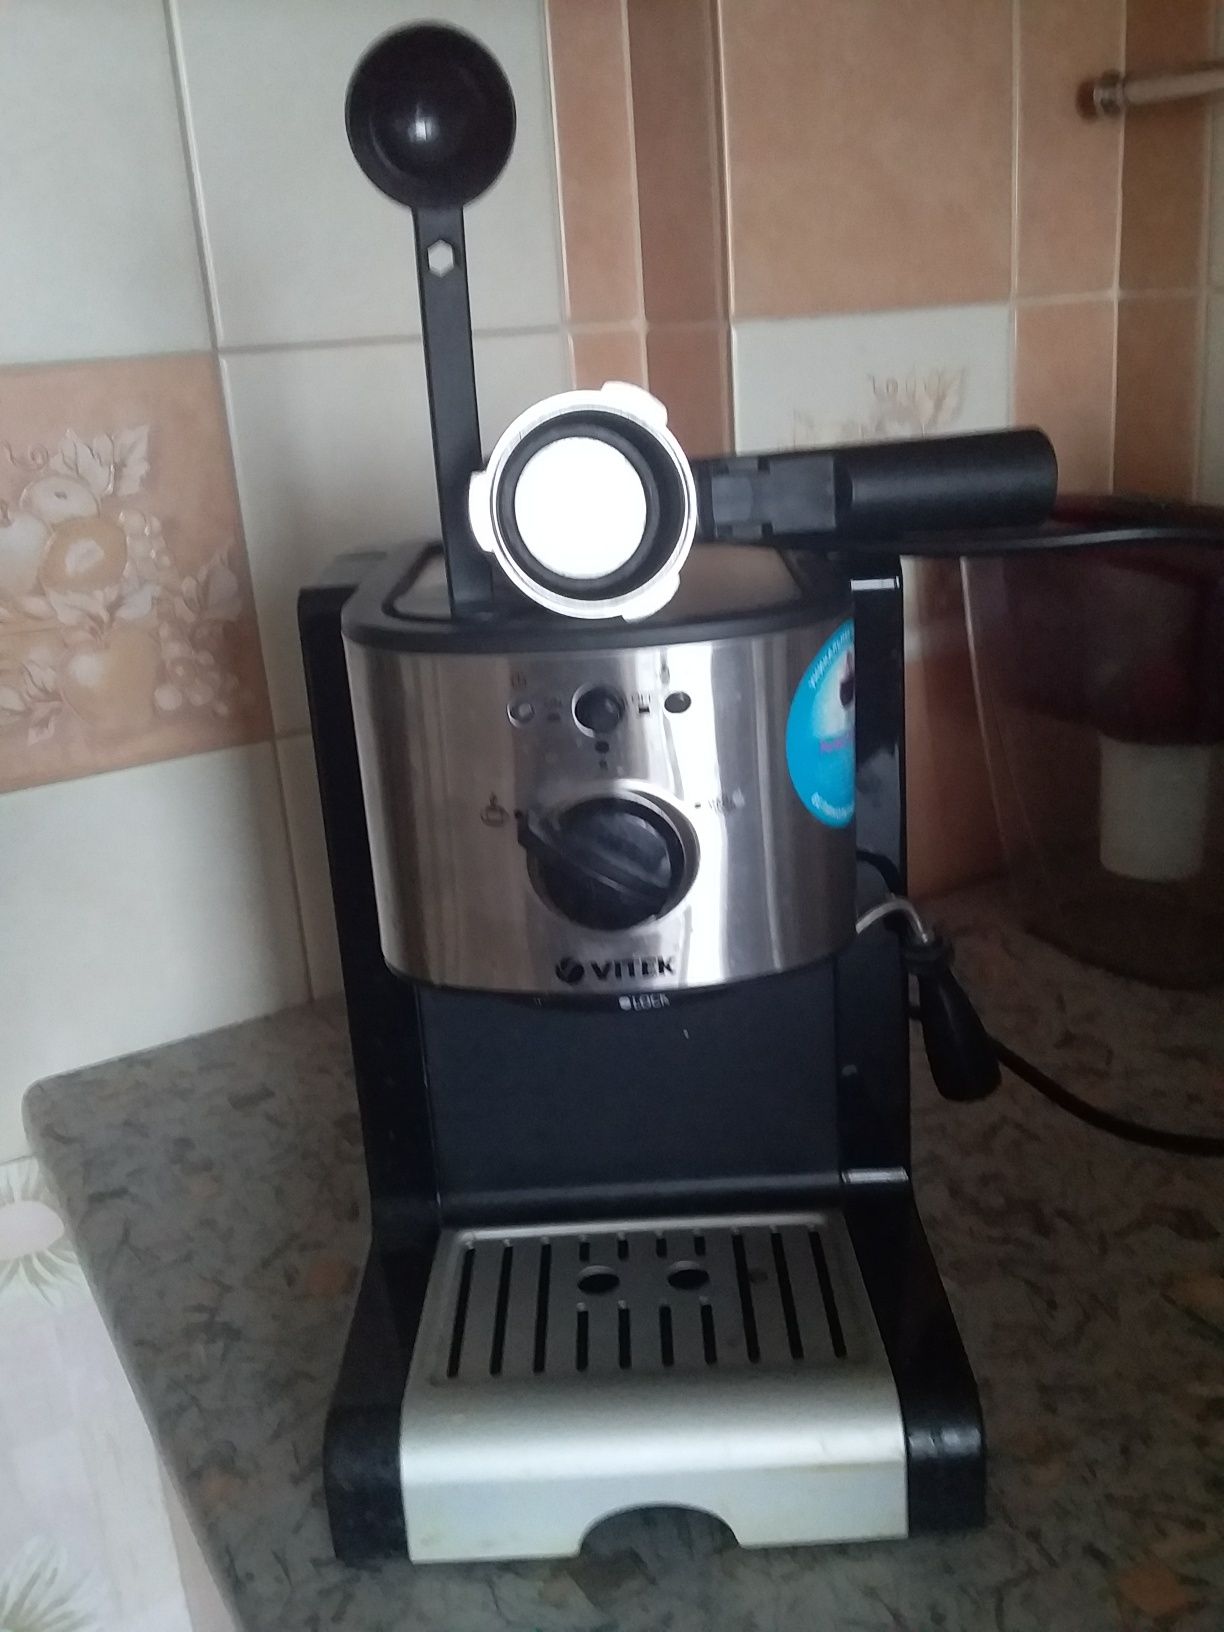 Кофеварка для приготовления кофе Vitek